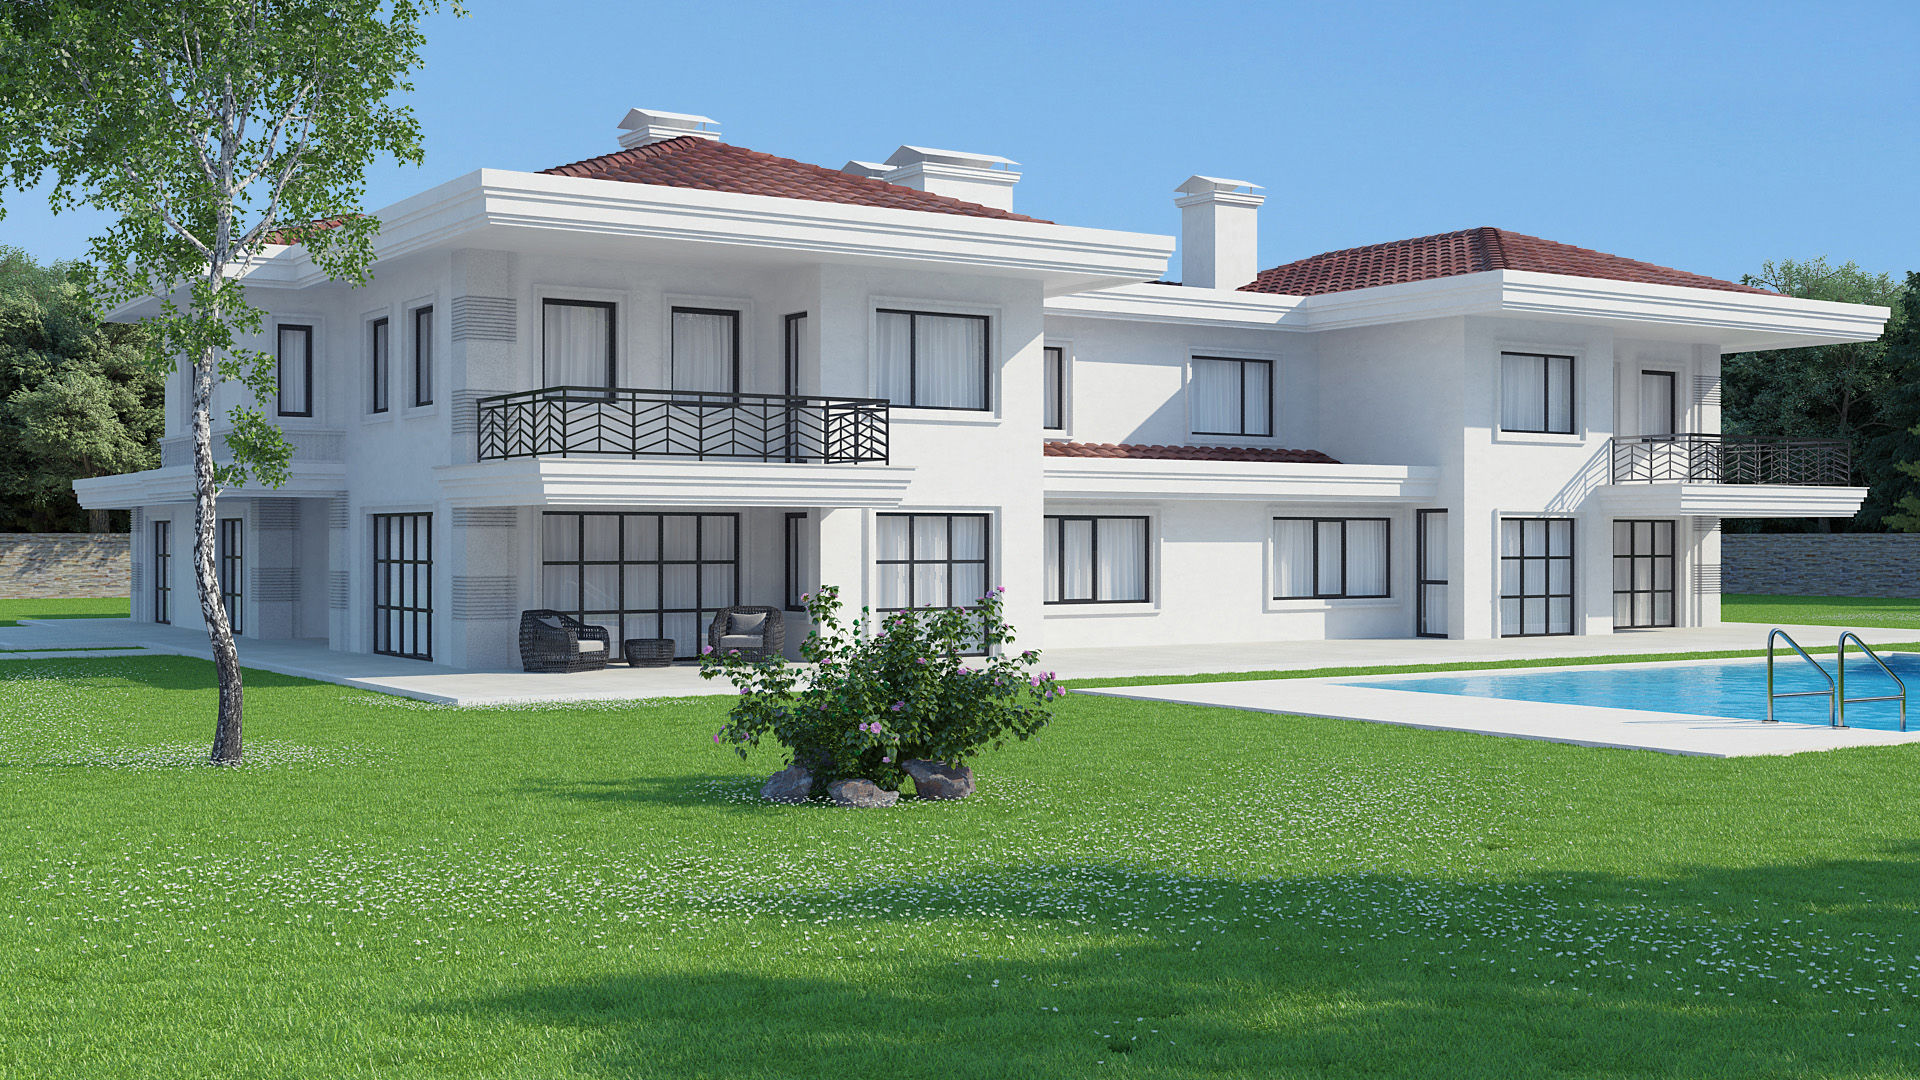 Villa , Dündar Design - Mimari Görselleştirme Dündar Design - Mimari Görselleştirme Modern houses